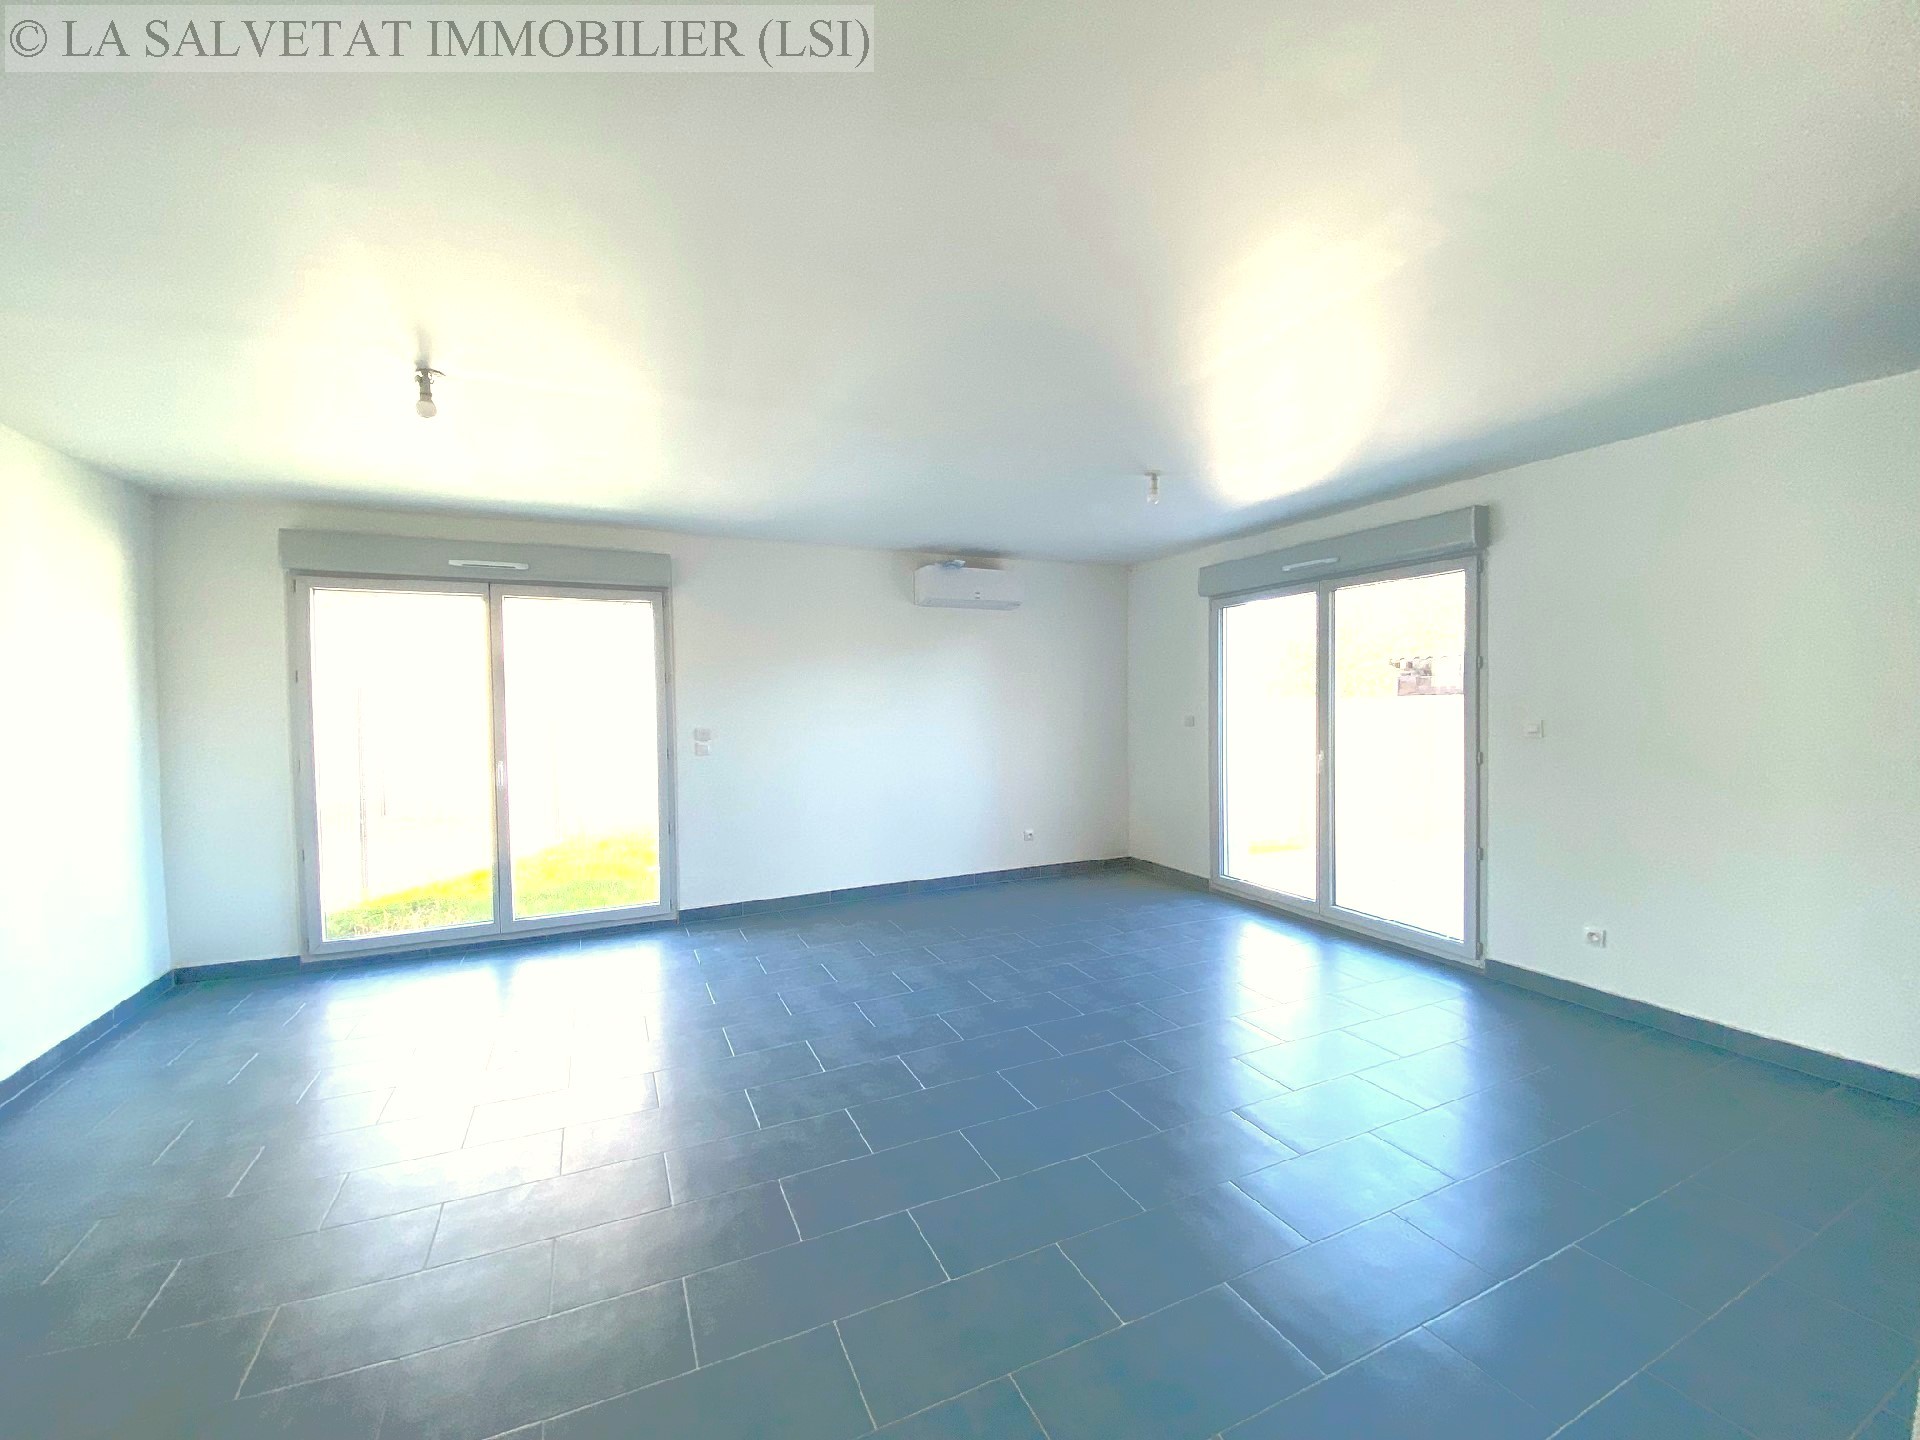 Vente maison-villa - ST LYS<br>92 m², 4 pièces